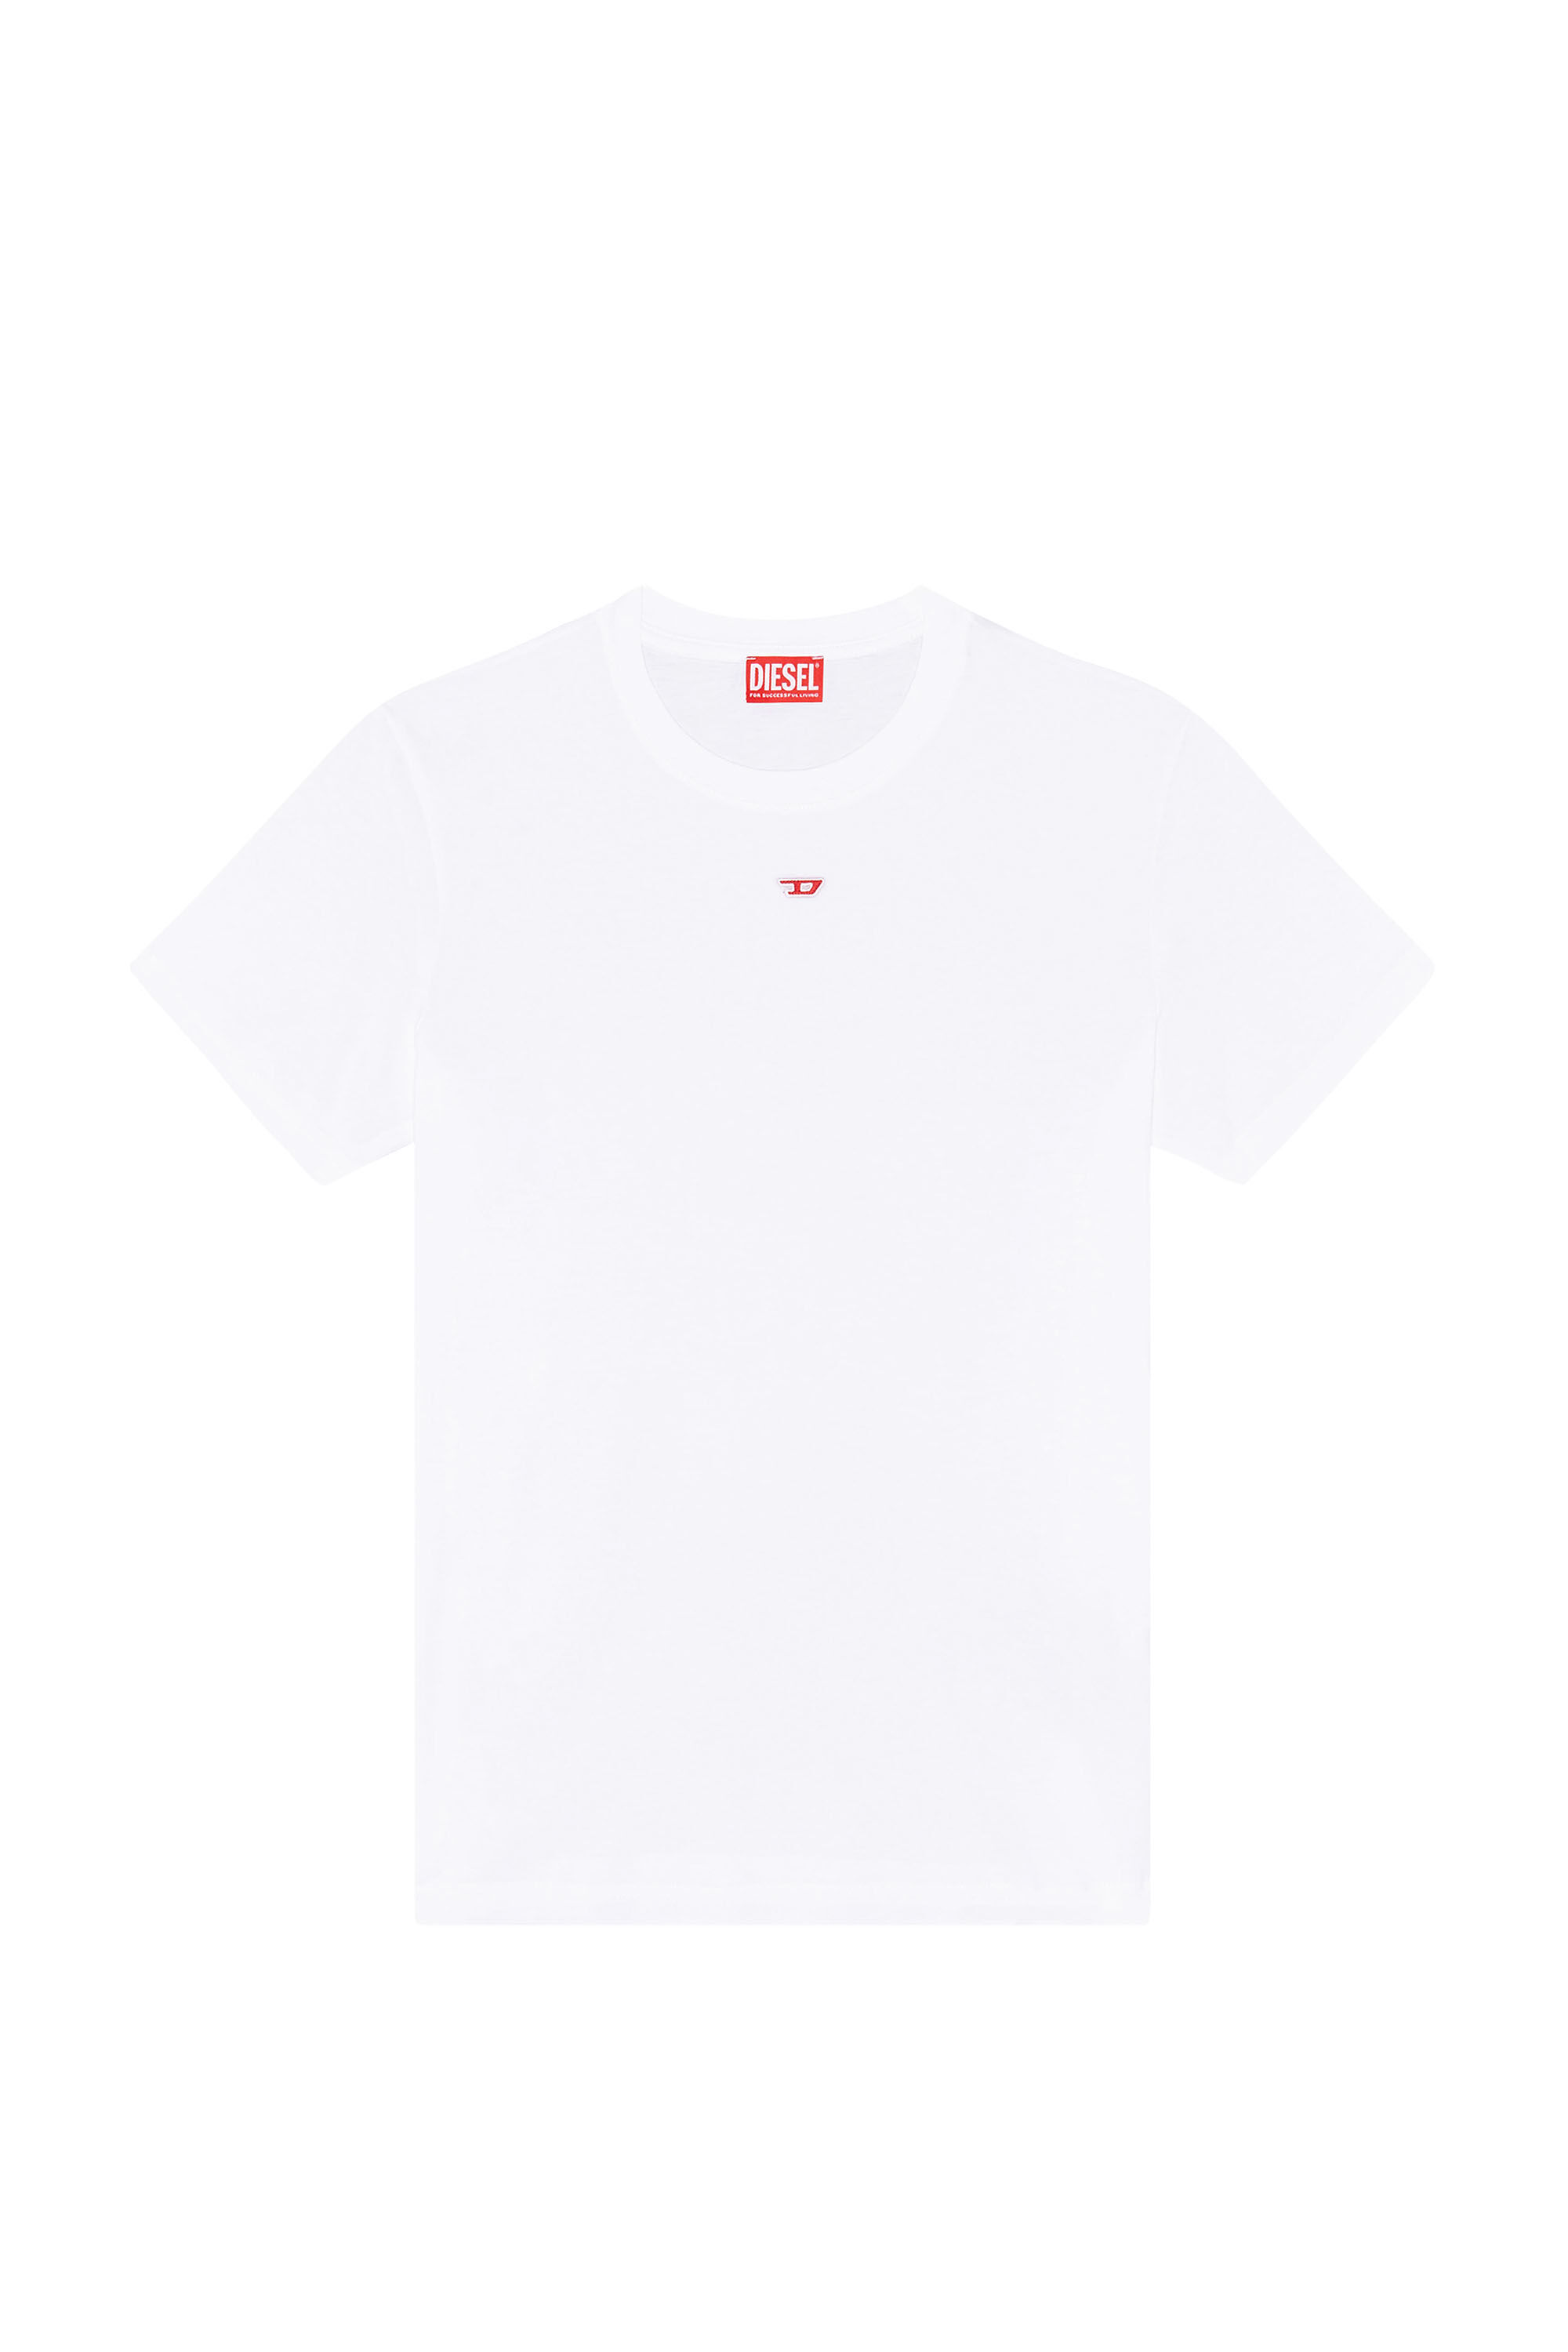 S/新品 DIESEL Tシャツ DIEGOR-D4 ブランド カットソー 白